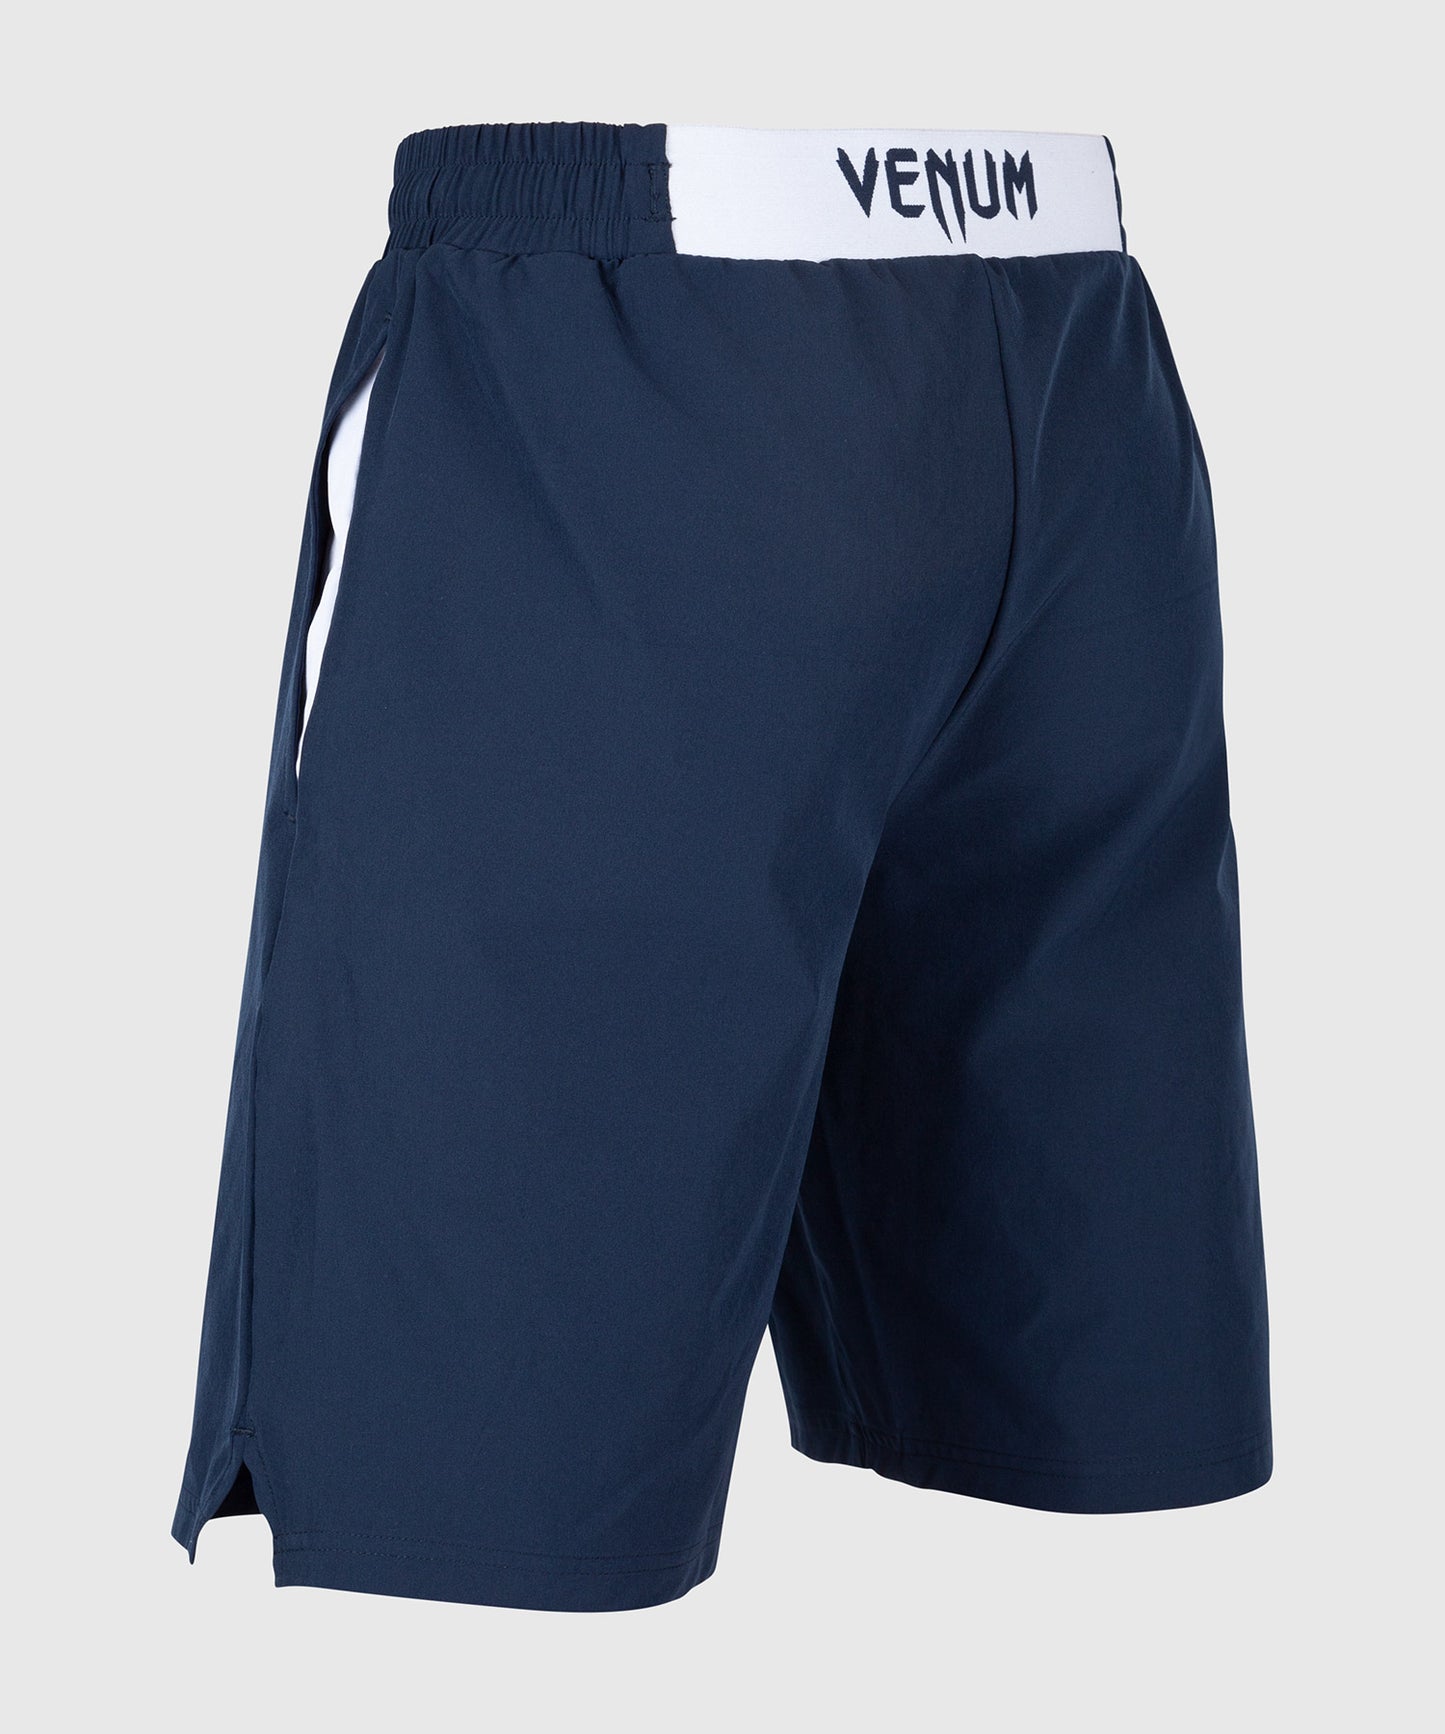 Pantalón corto de entrenamiento Venum Classic - Azul Marino